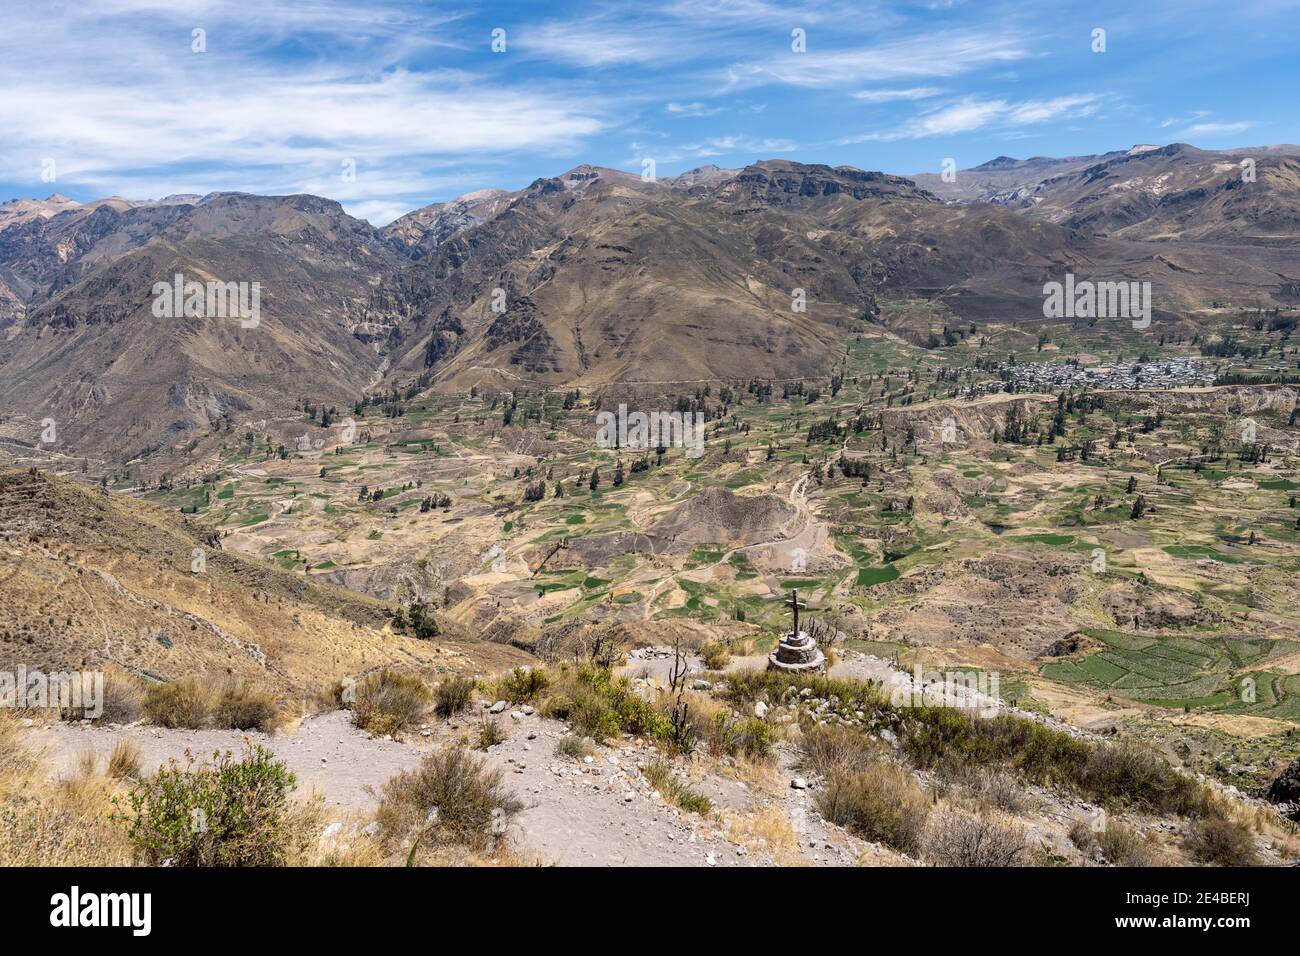 La Colca Valley, nelle Ande peruviane, ospita il secondo canyon più profondo del mondo, con terrazze, fauna selvatica e paesaggi naturali. Foto Stock